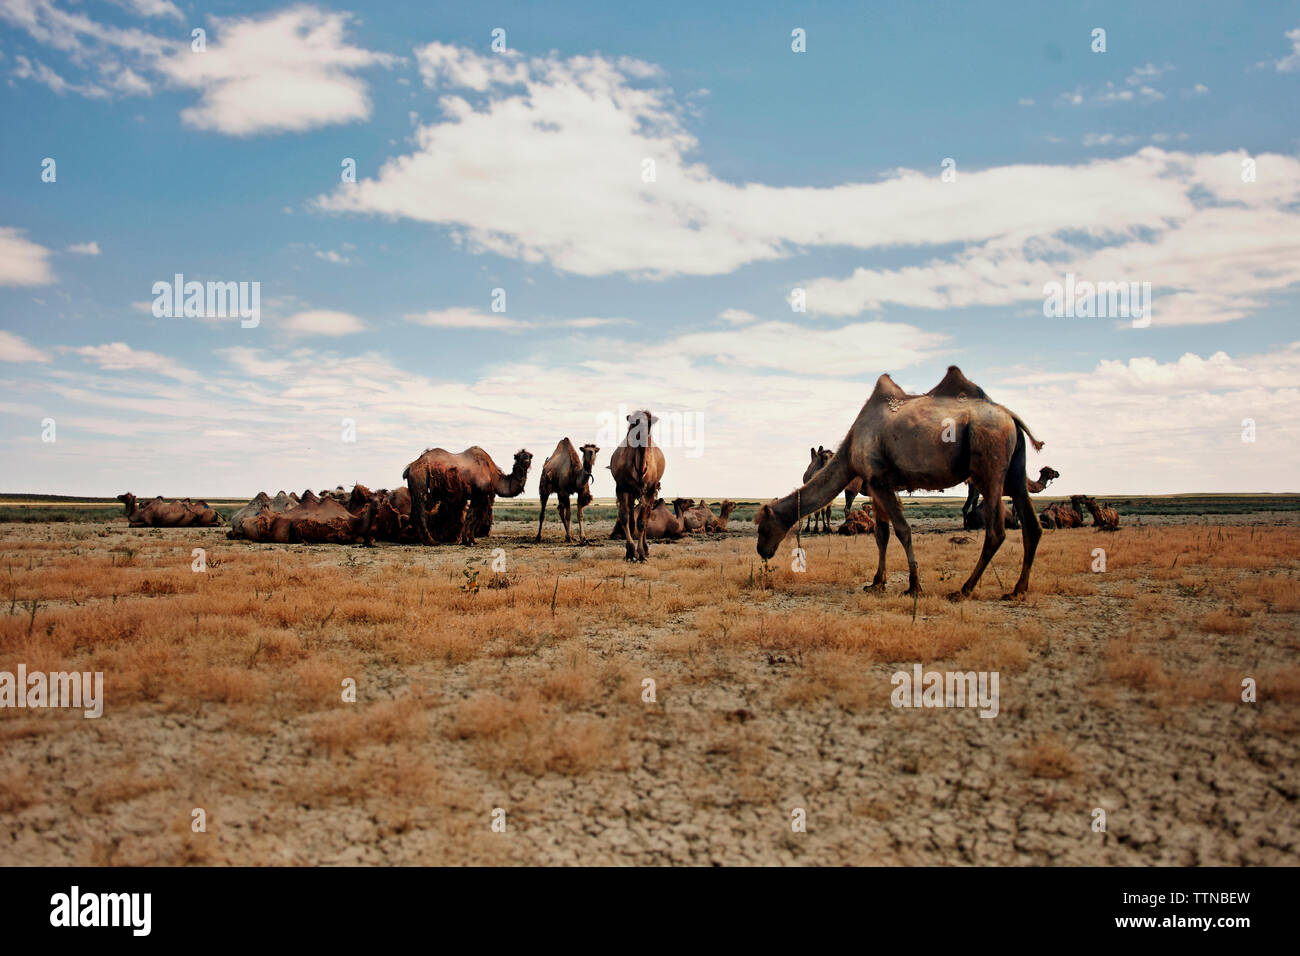 Los camellos en el árido paisaje contra el cielo durante el día soleado Foto de stock